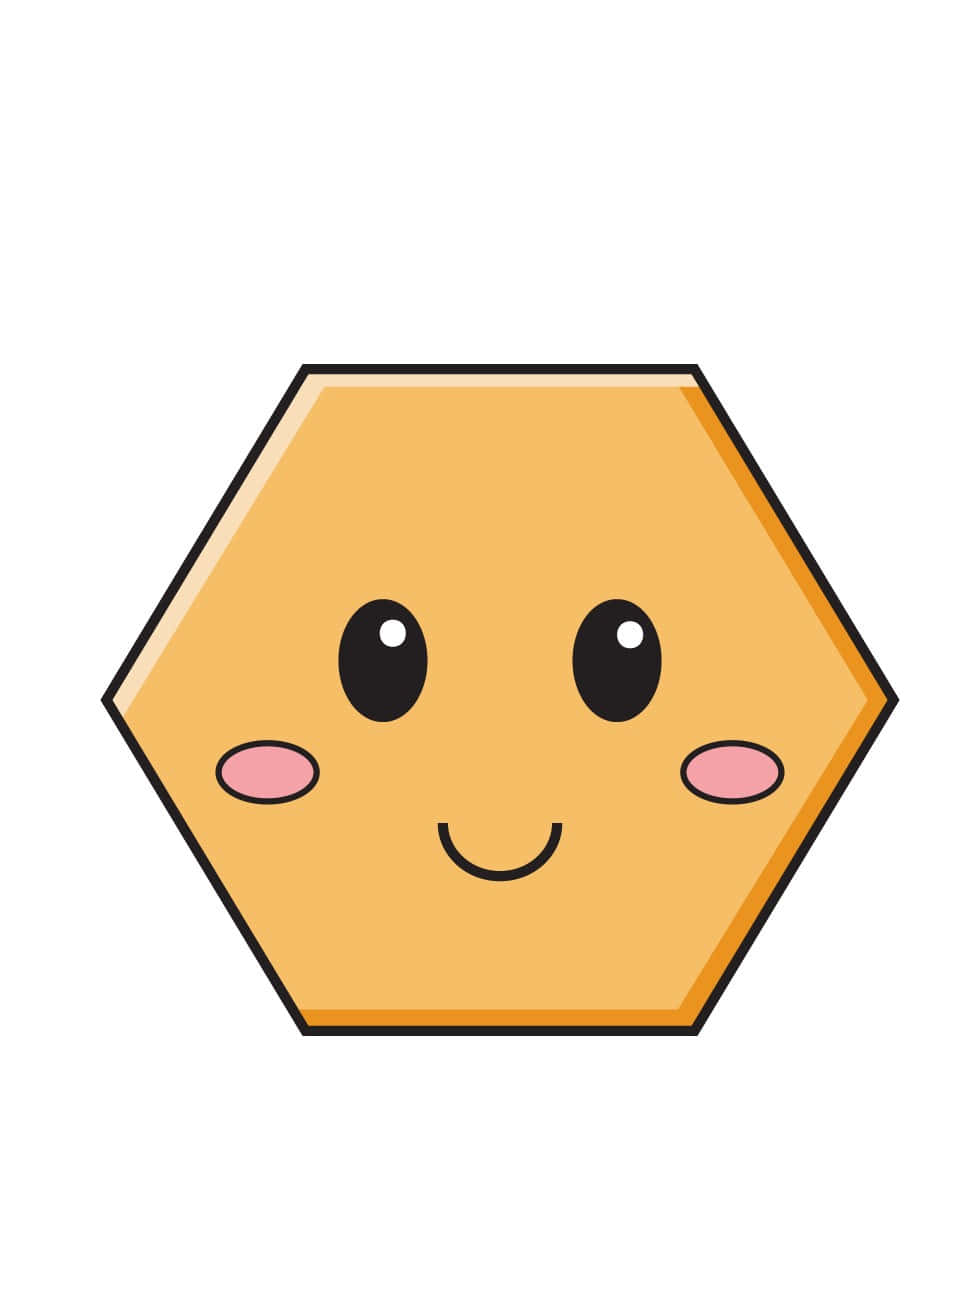 Hexagonmit Smiley-gesicht Bild